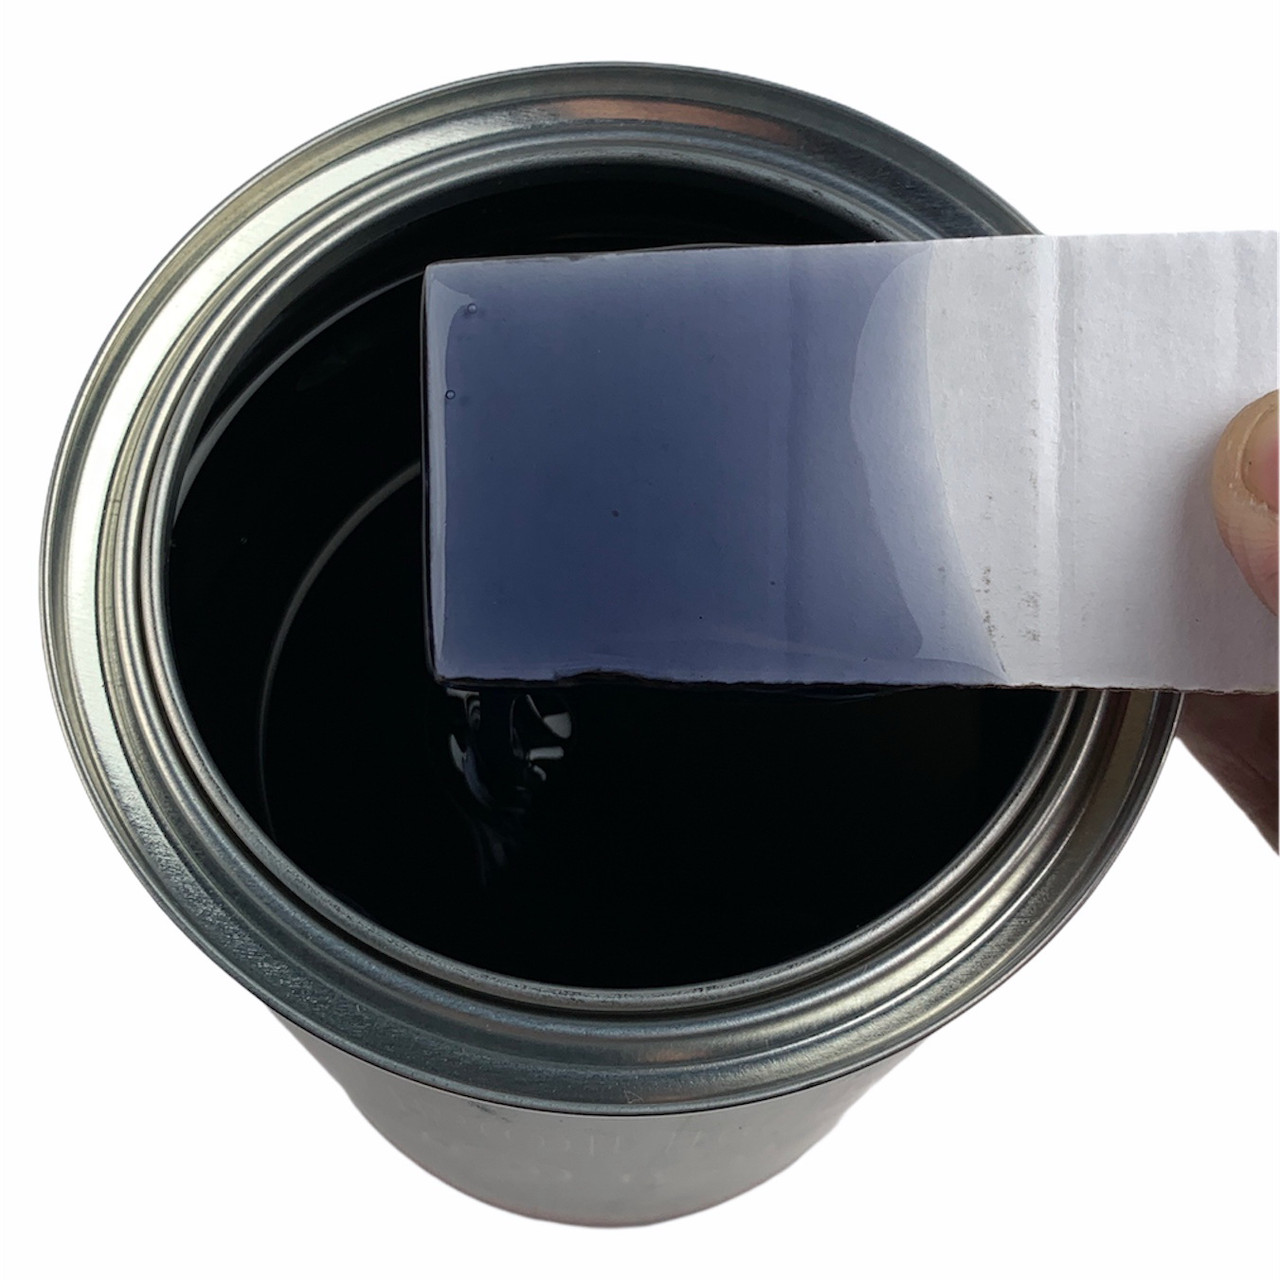 Клей Poligrip 999 Nero (колір чорний) - поліуретановий клей з підвищеною термостійкістю, Італія 0,8 л. детальна фотка